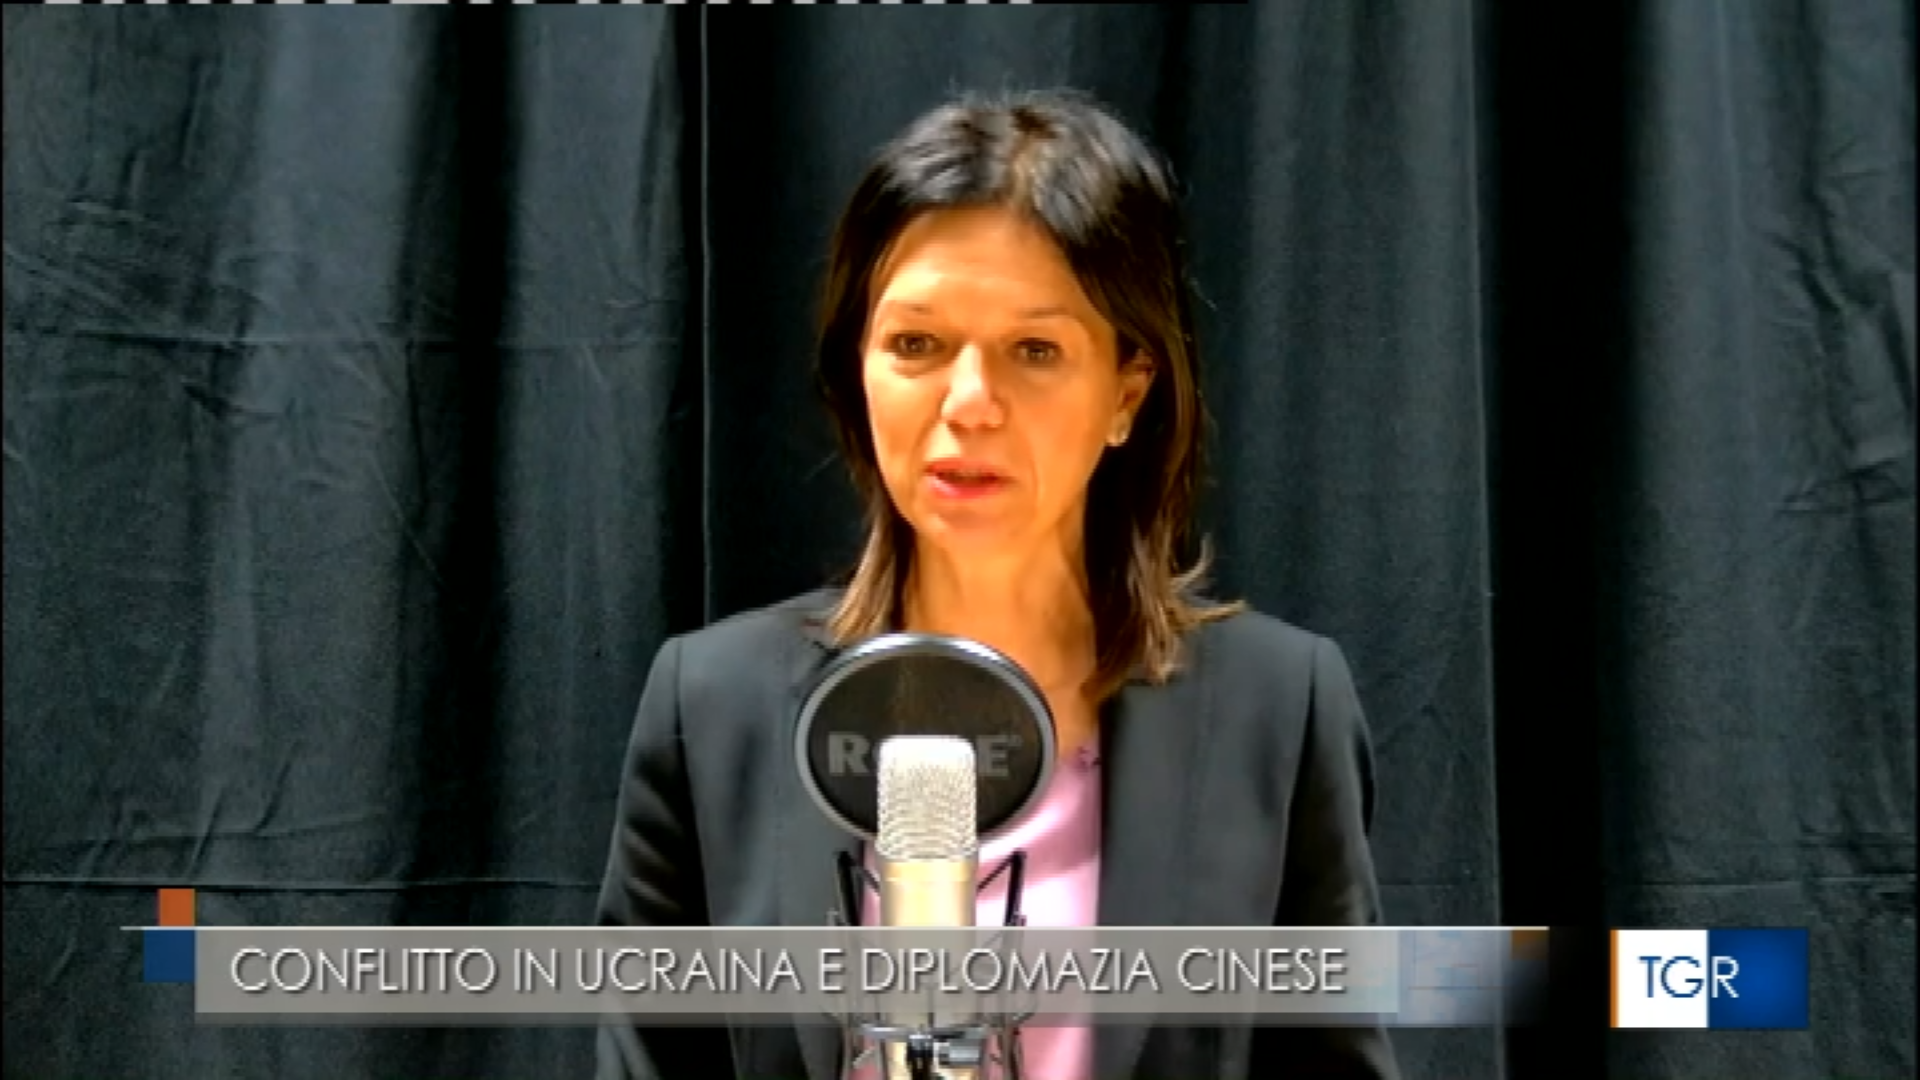 La Prof.ssa Spigarelli intervistata da Rai3 su Cina e crisi internazionale in Ucraina